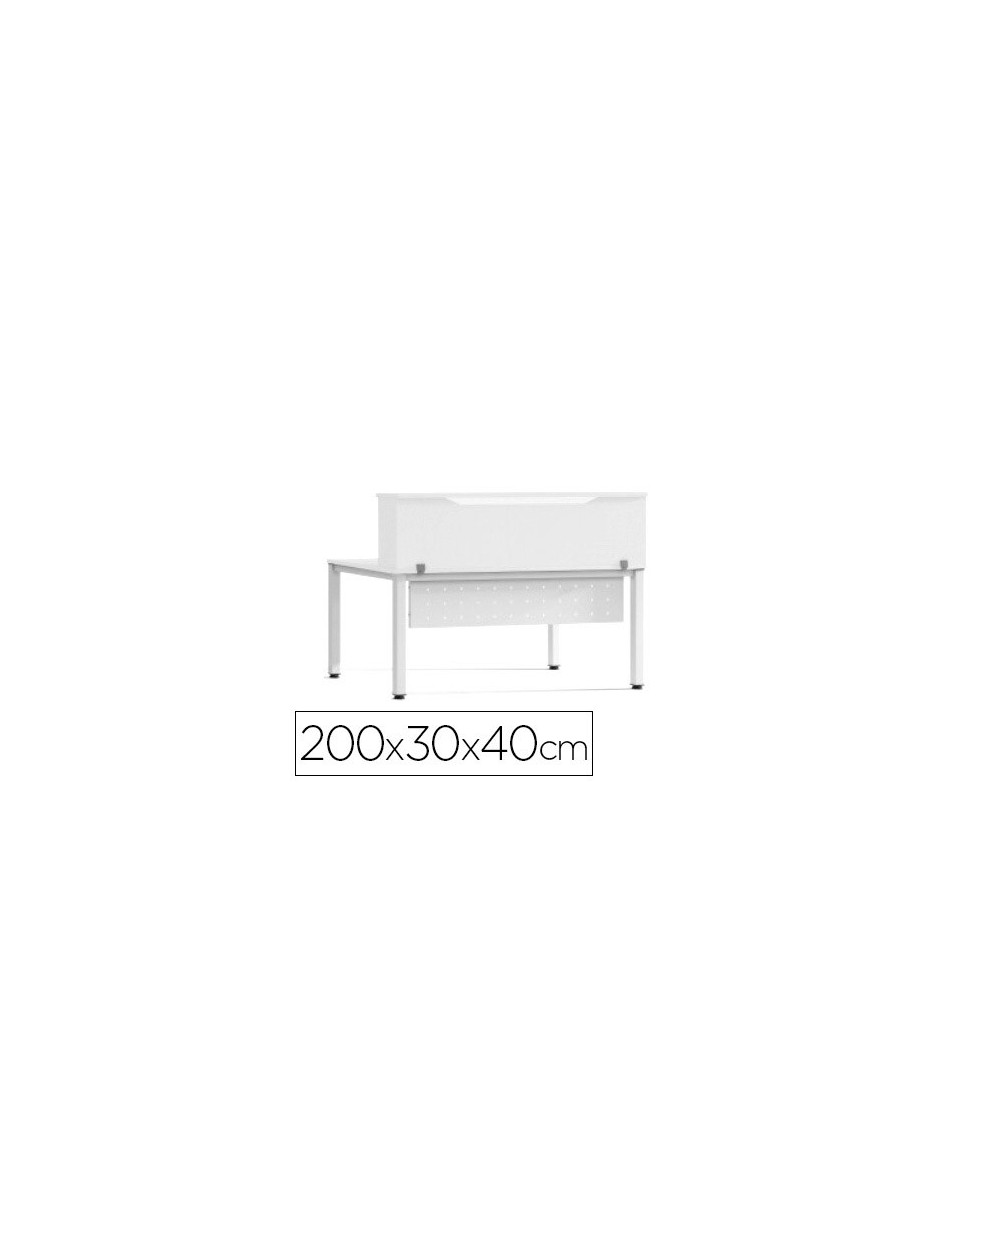 Mostrador de altillo rocada valido para mesas work metal executive 200x30x40 cm acabado aw04 blanco blanco